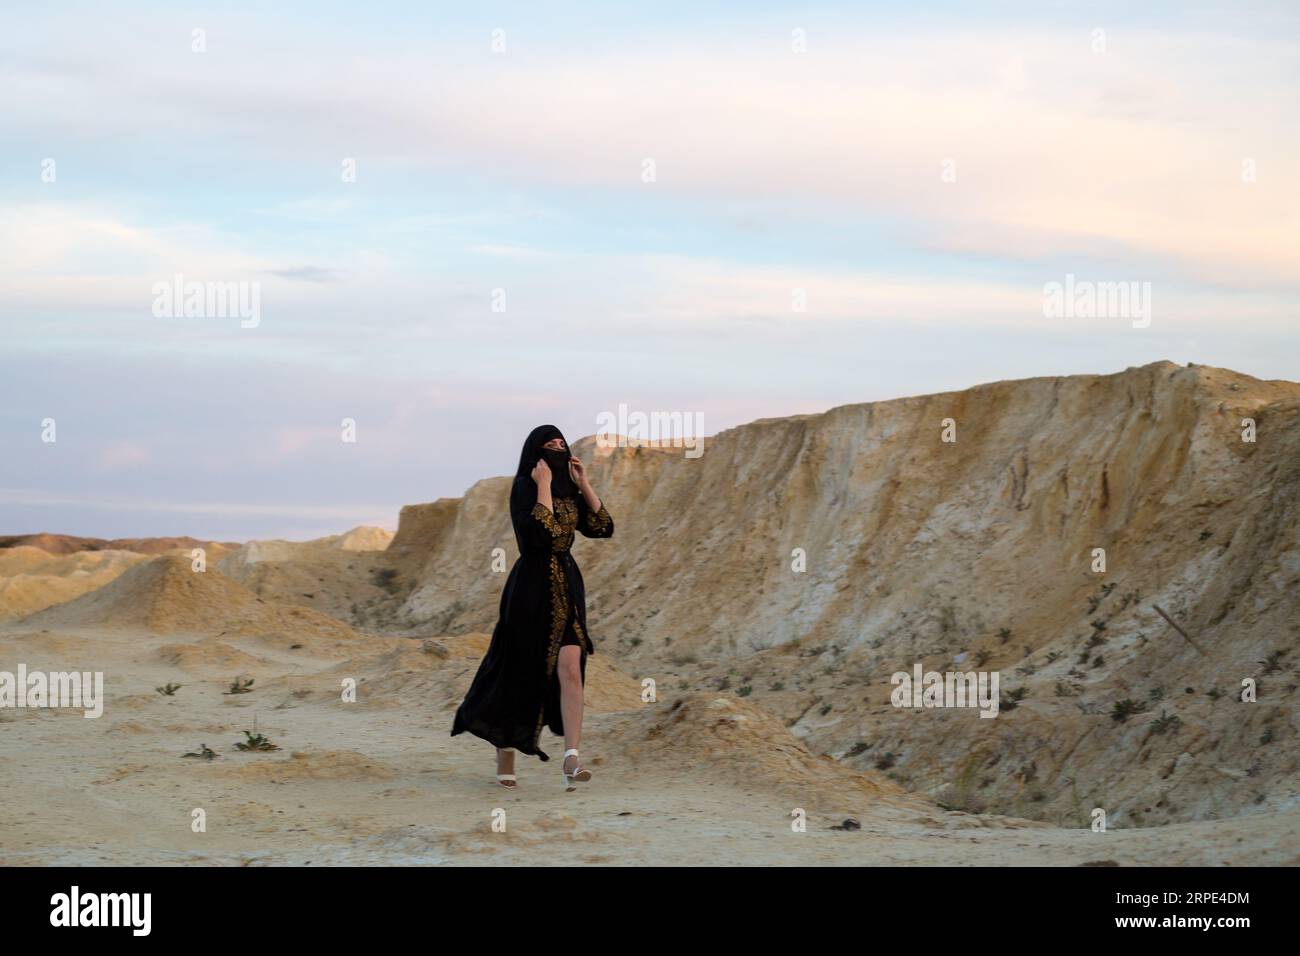 La ropa nacional negra de la mujer del Islam corre a través del desierto del peligro. Mujer perdida en la naturaleza Foto de stock